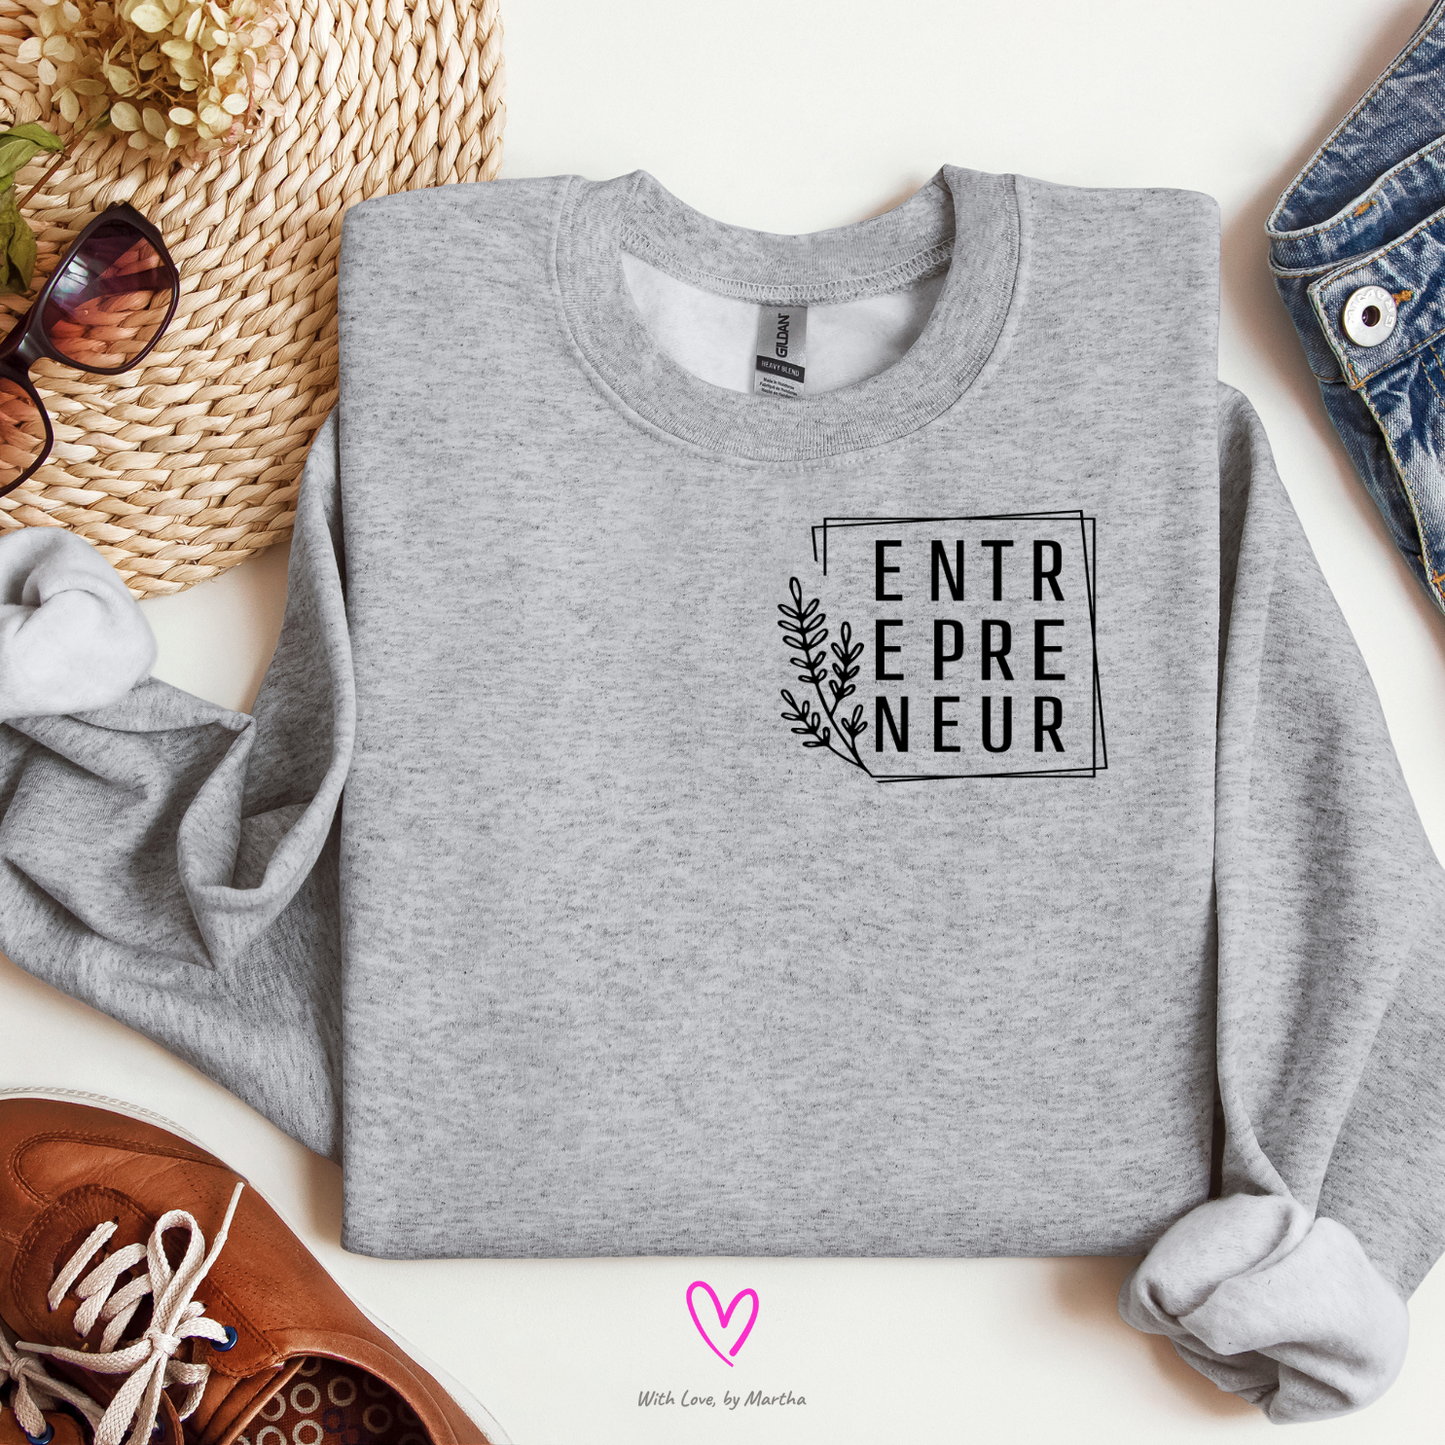 Entrepreneur Tee, Crewneck Sweatshirt or hoodie